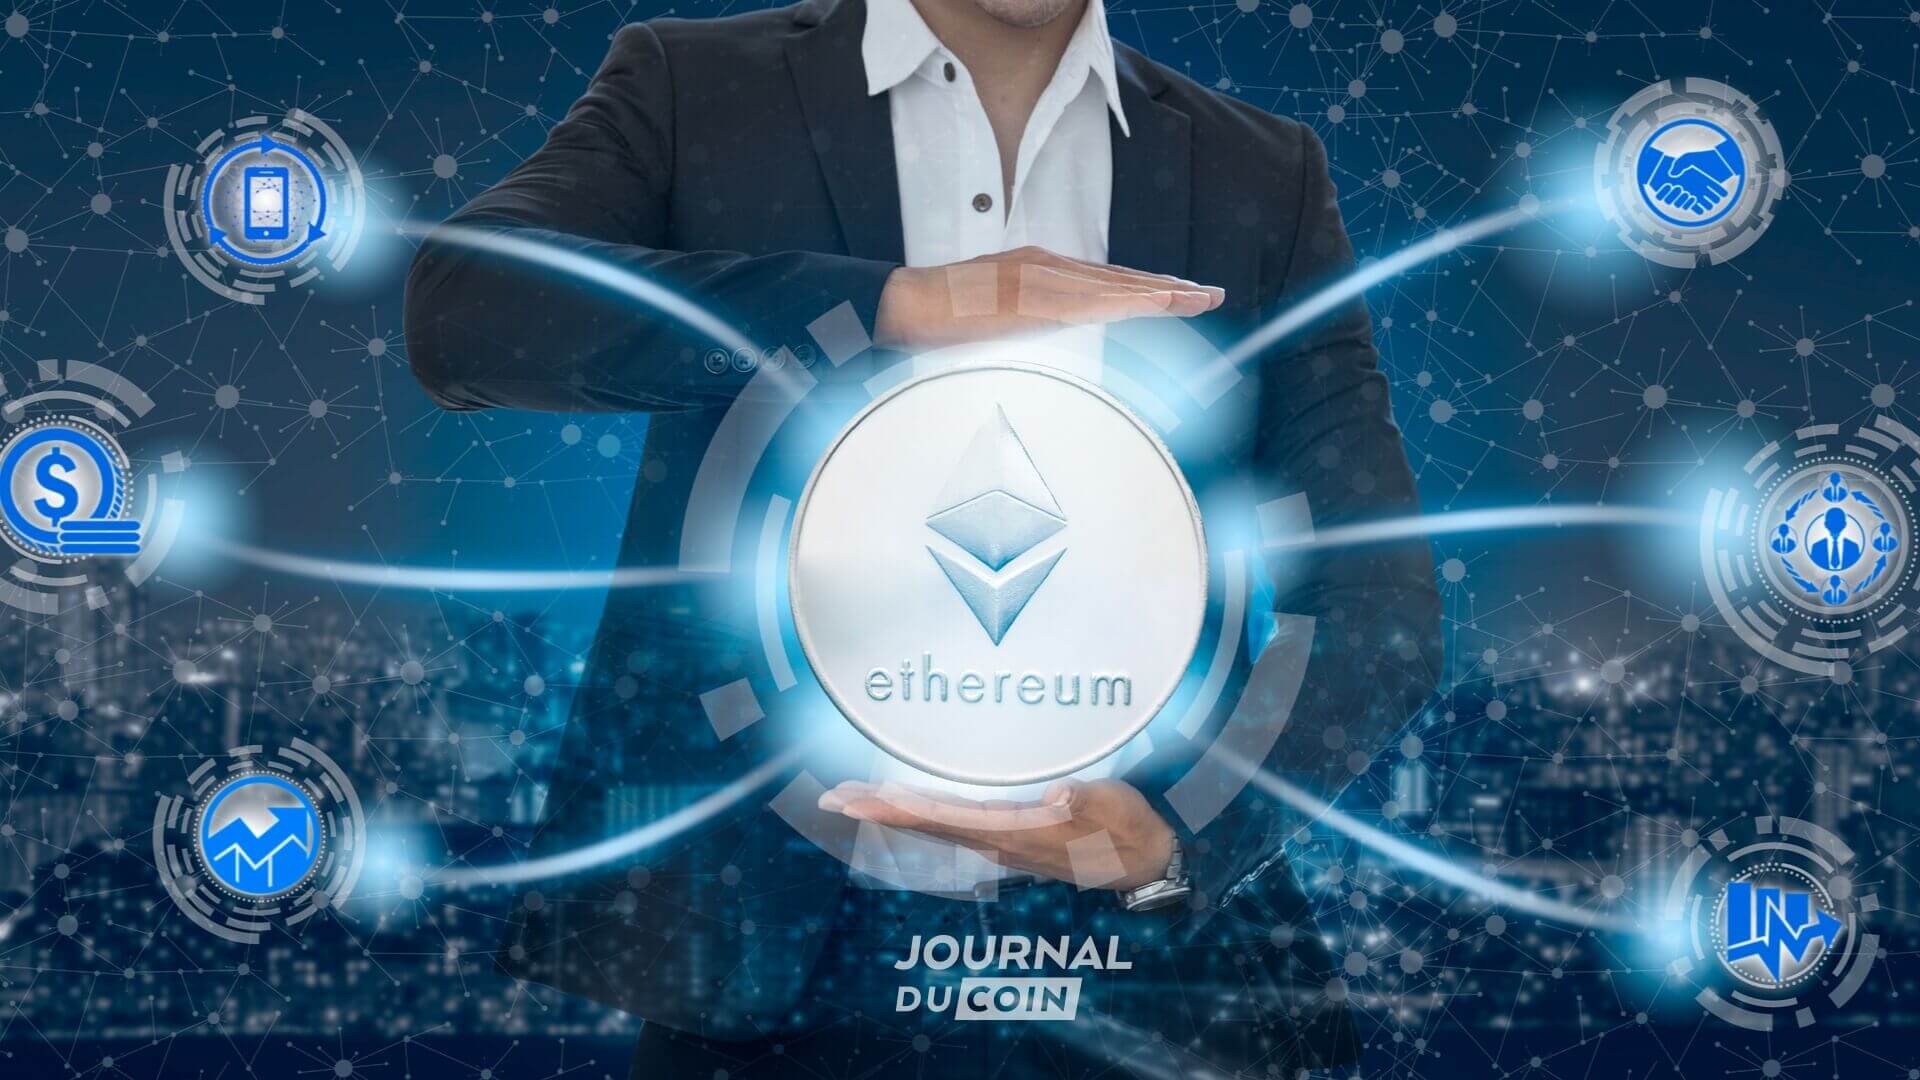 Le fondateur d'Ethereum Vitalik Buterin pense qu'Ethereum servira de fondement à nos futures sociétés